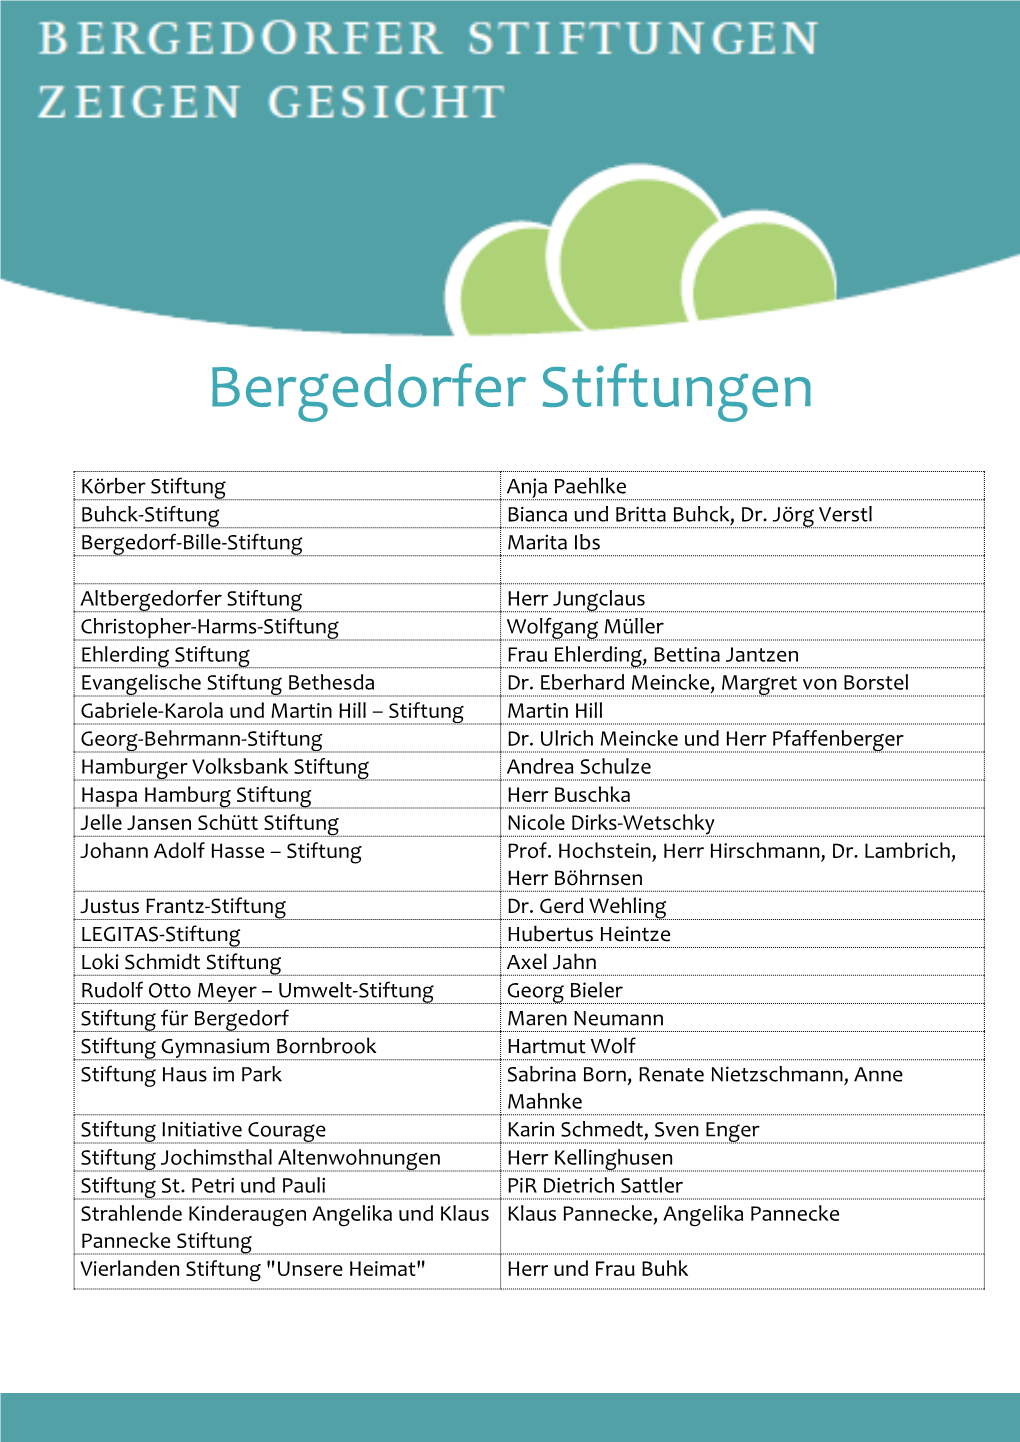 Liste Der Bergedorfer Stiftungen